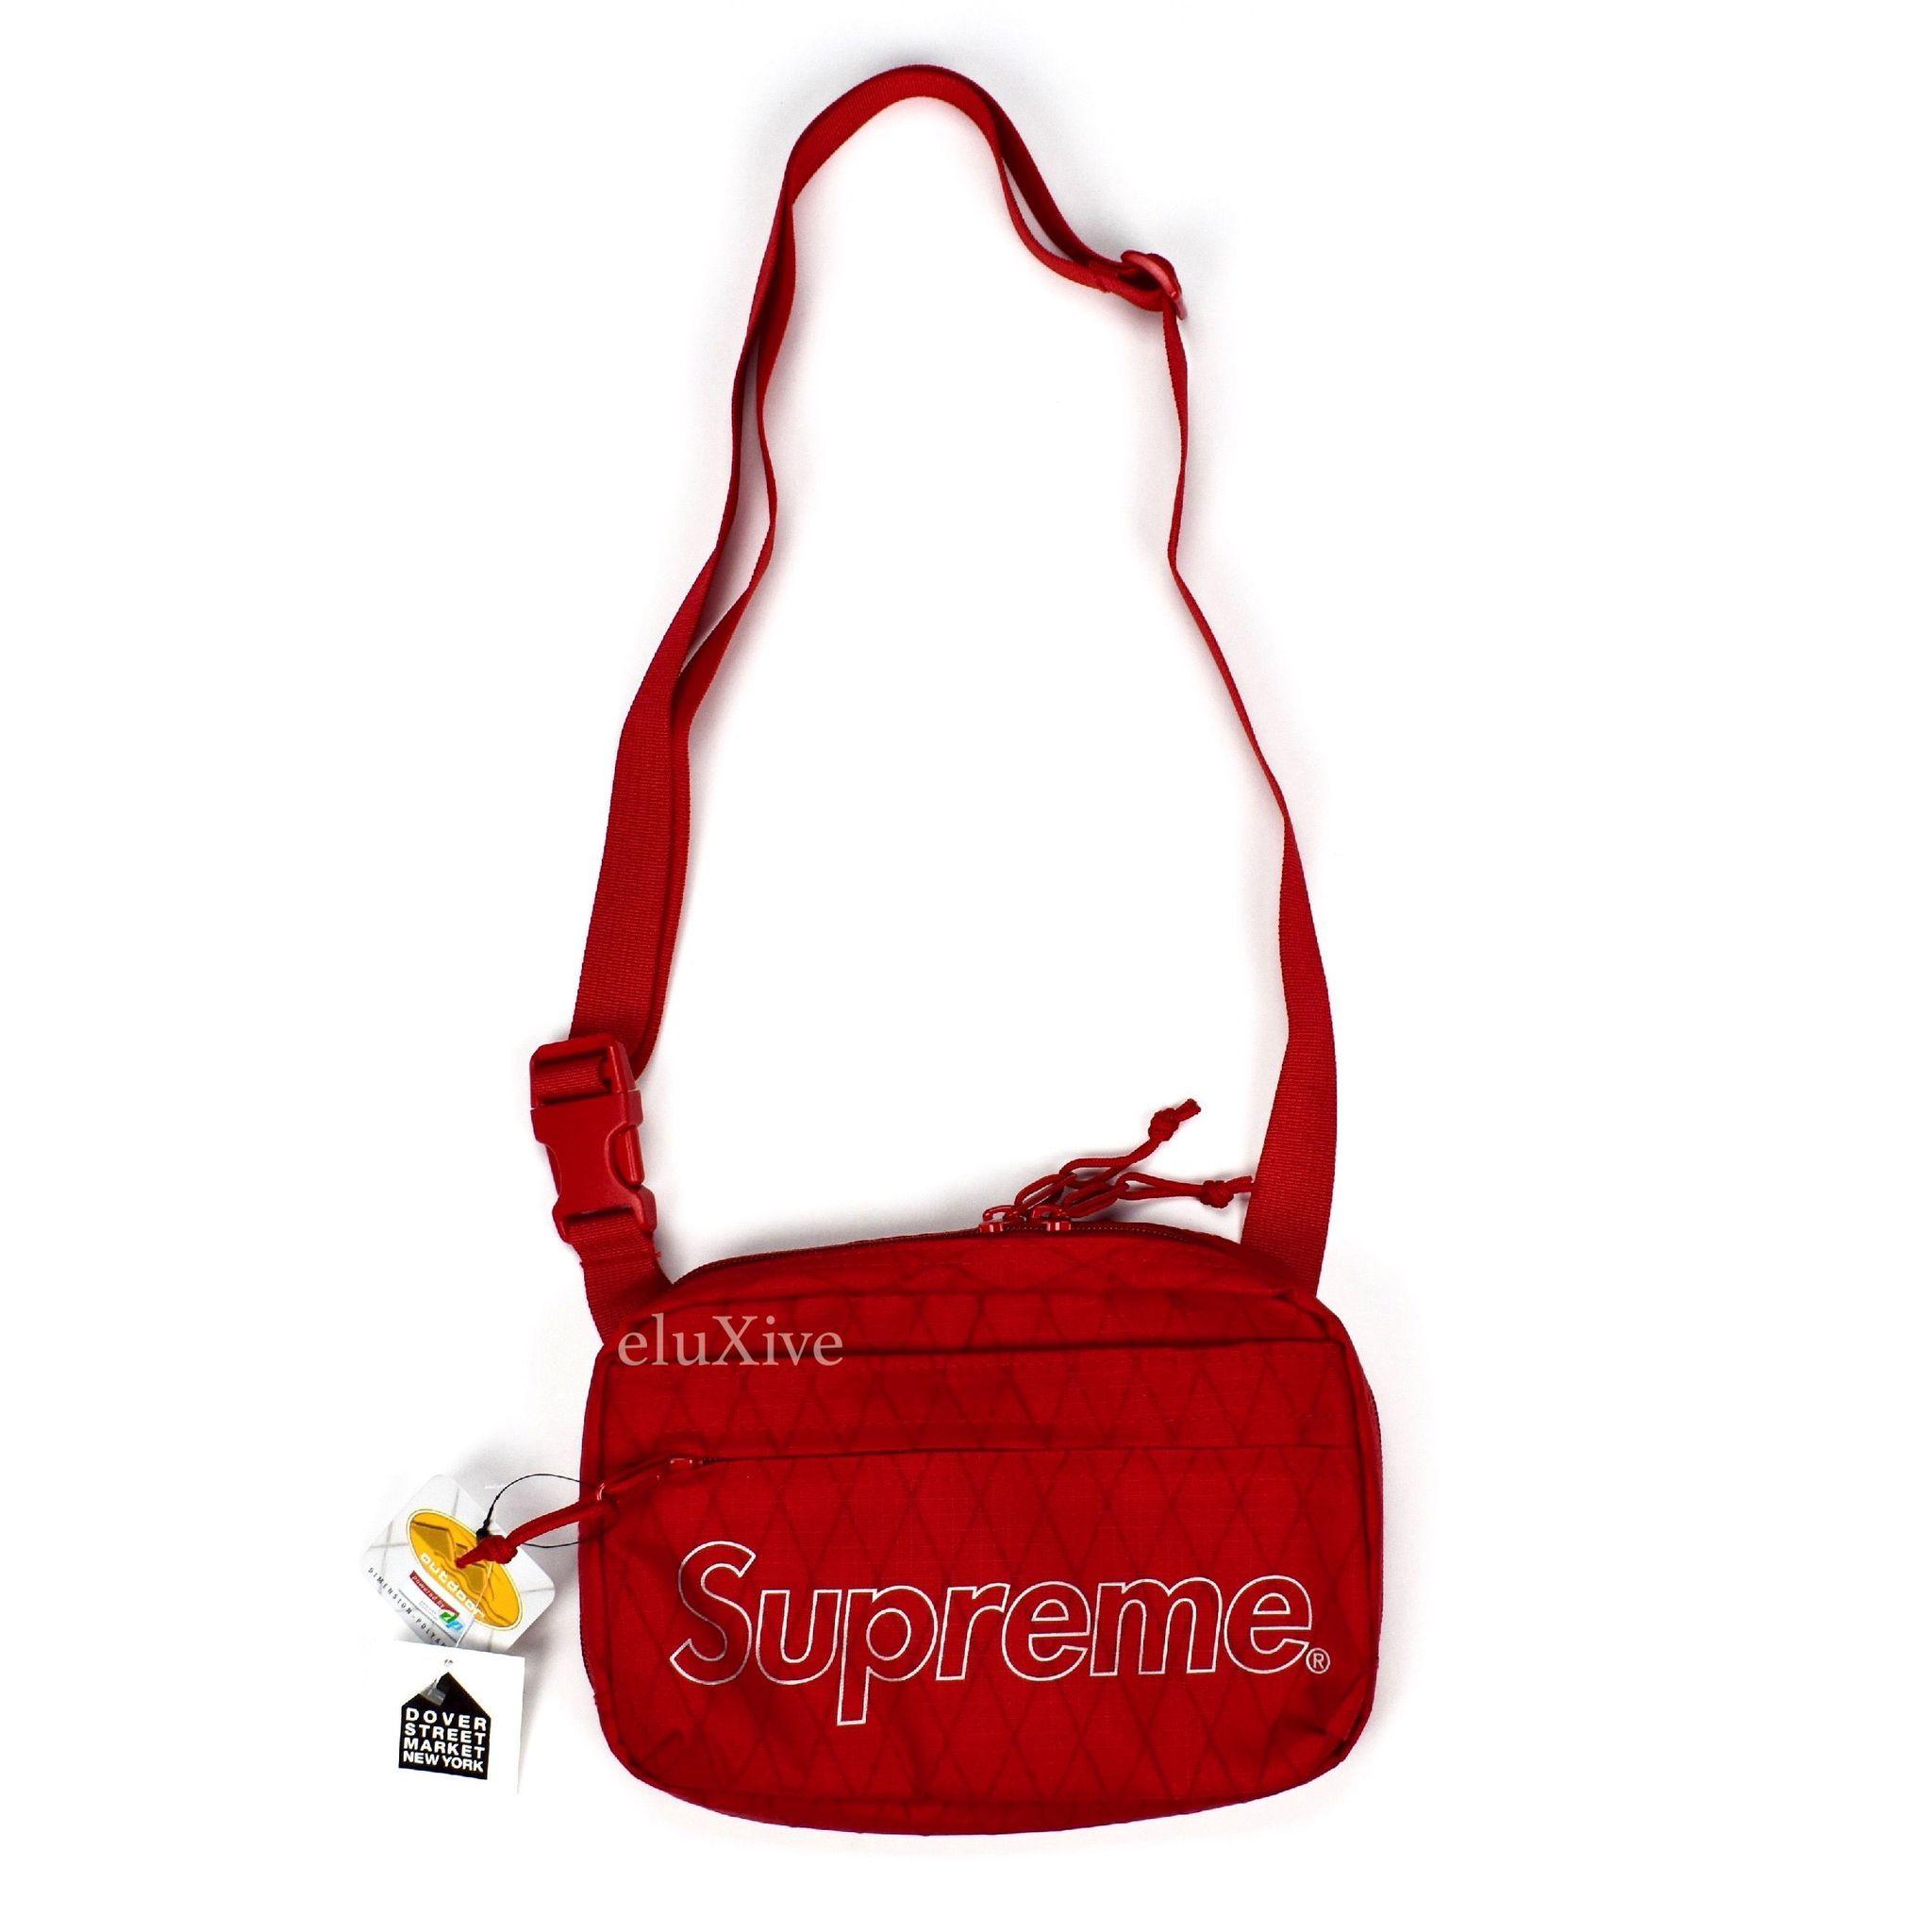 Supreme Bag Logo - LogoDix